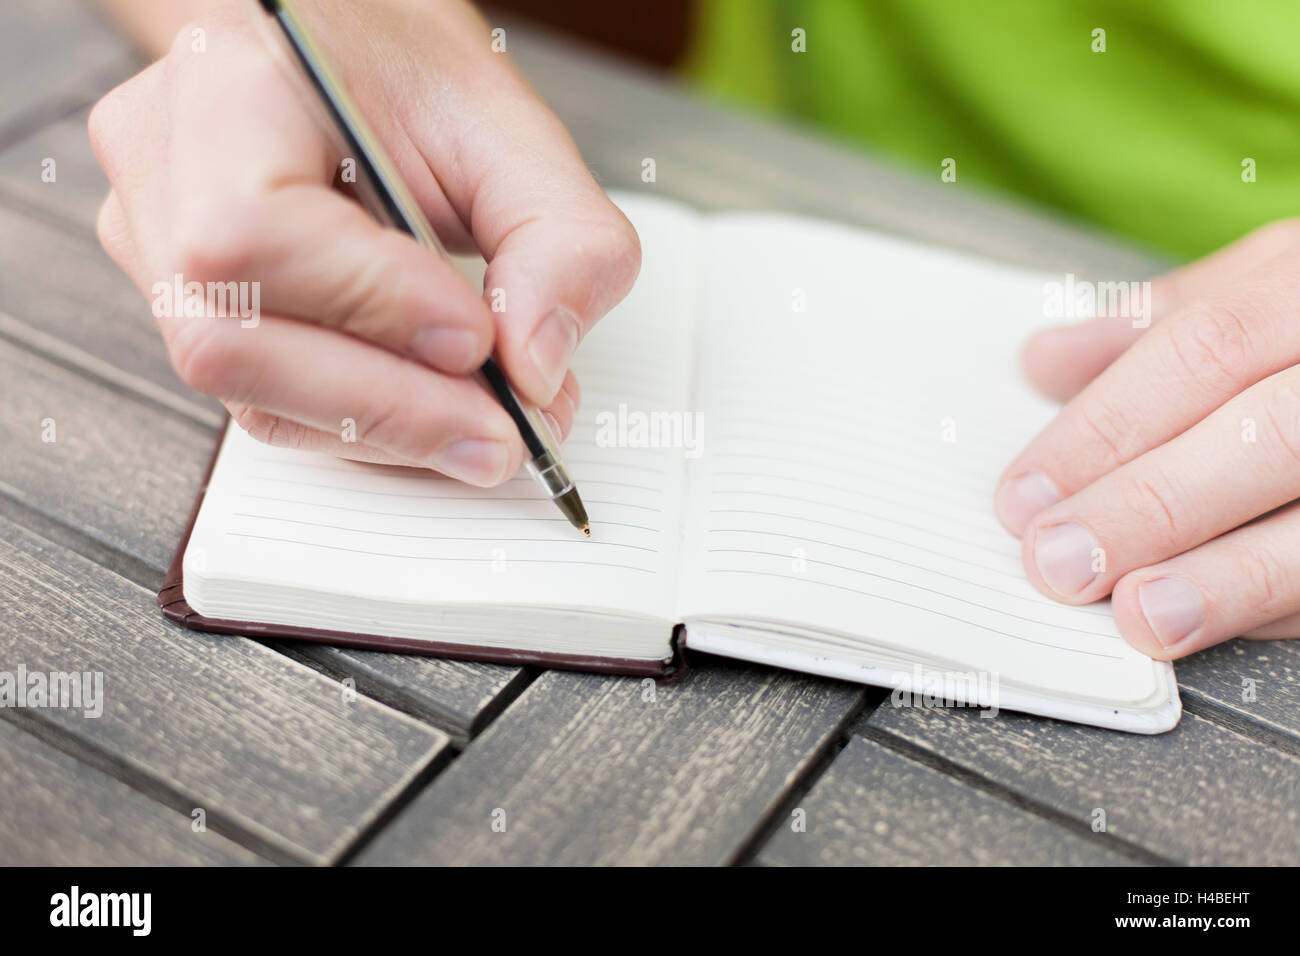 Junger Mann schreiben von Notizen auf einem Notebook mit einem Stift, Nahaufnahme der Hände Stockfoto